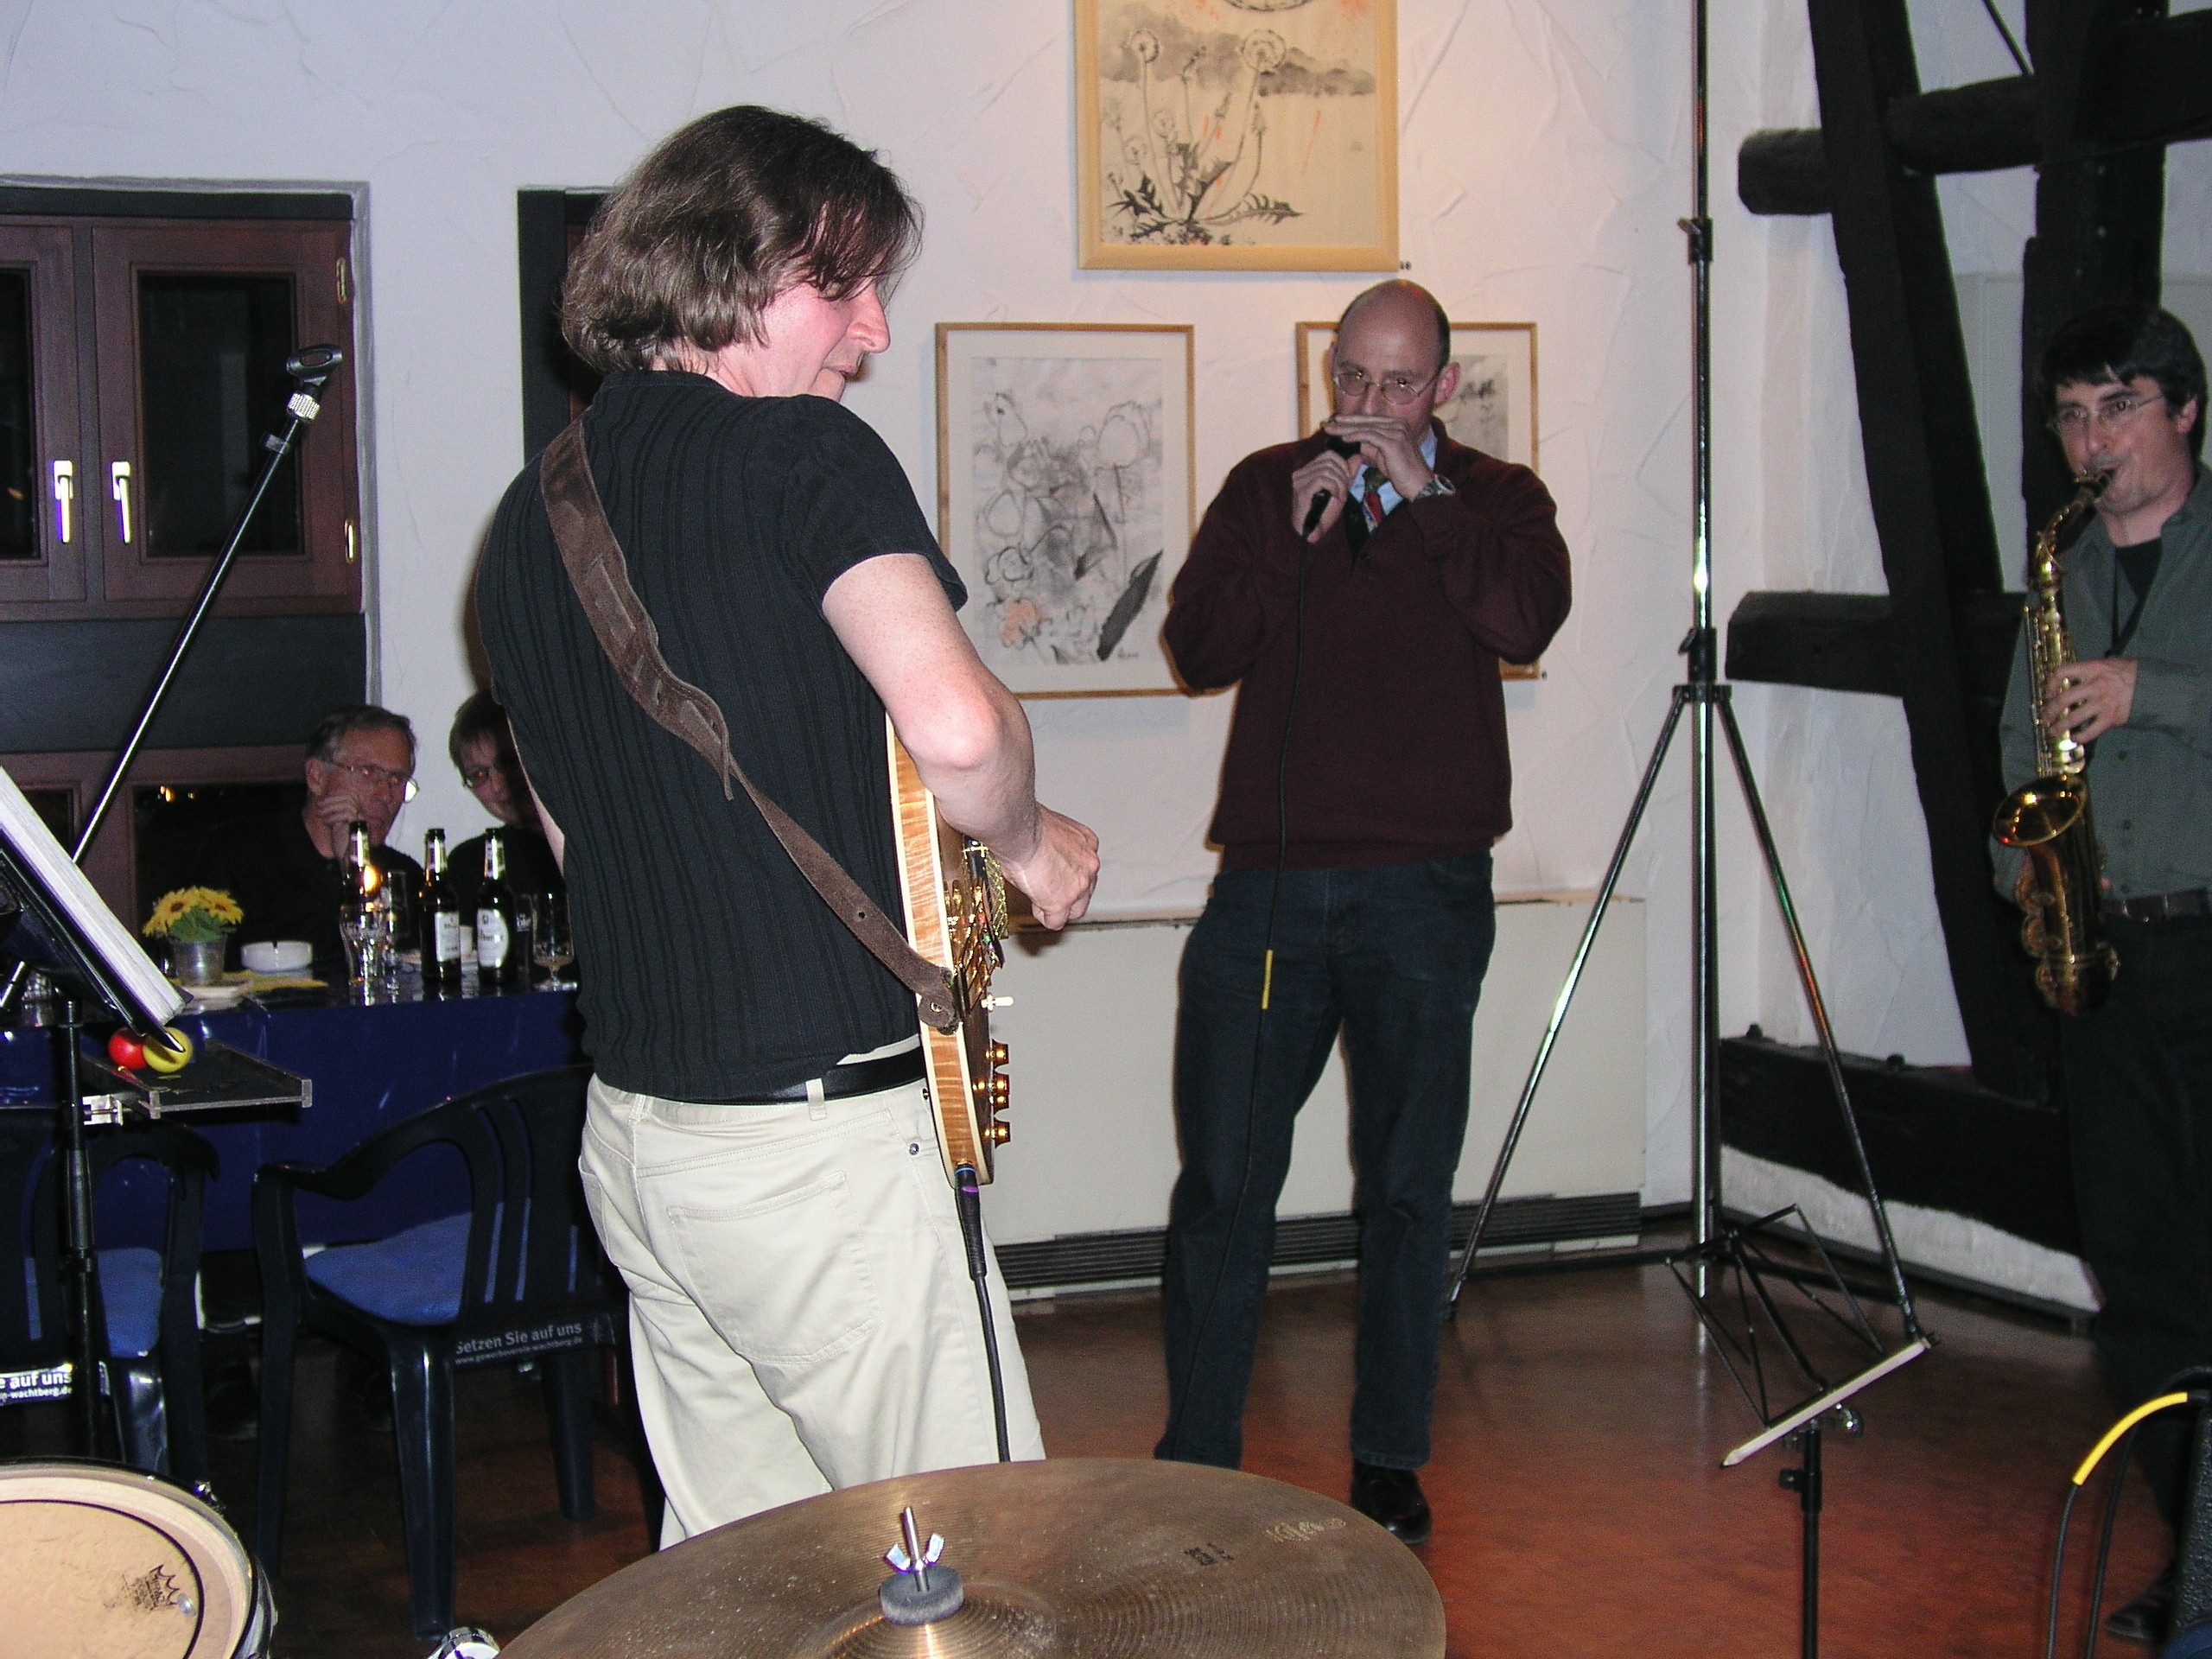 mit Gregor Salz, Köllenhof, Wachtberg bei Bonn, 04/2005